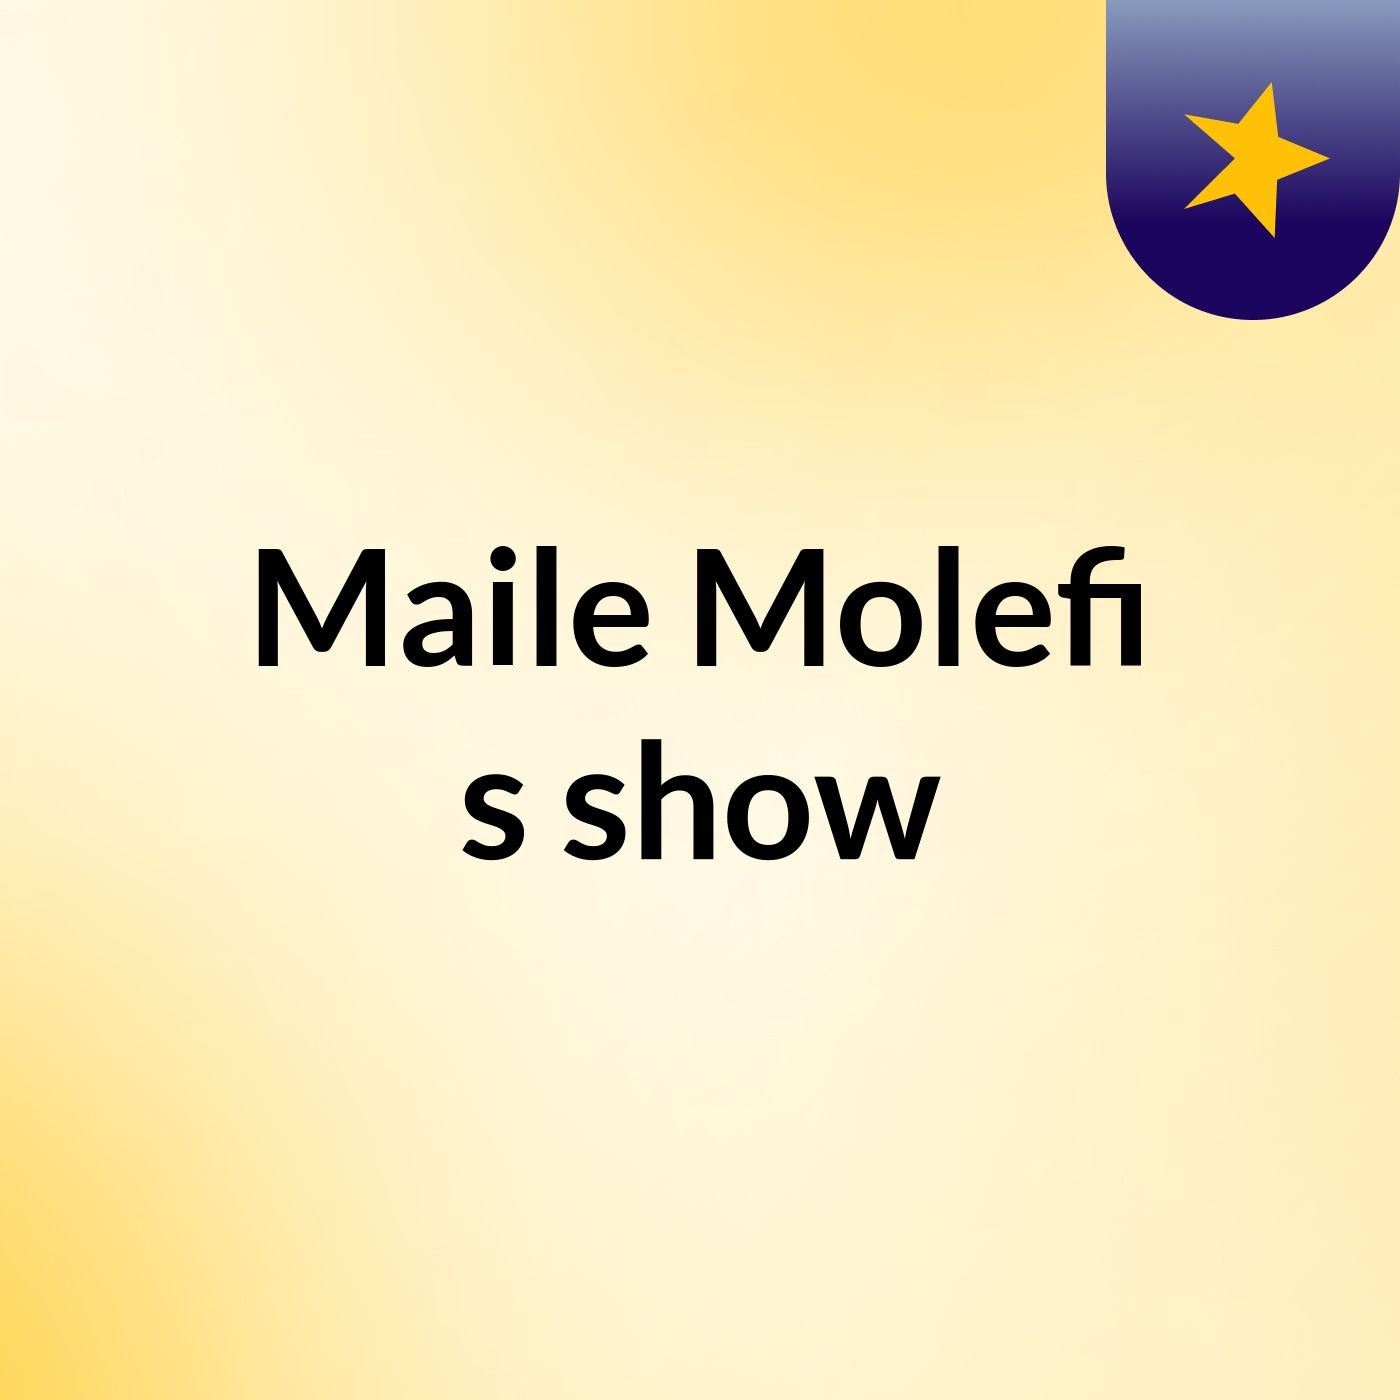 Maile Molefi's show